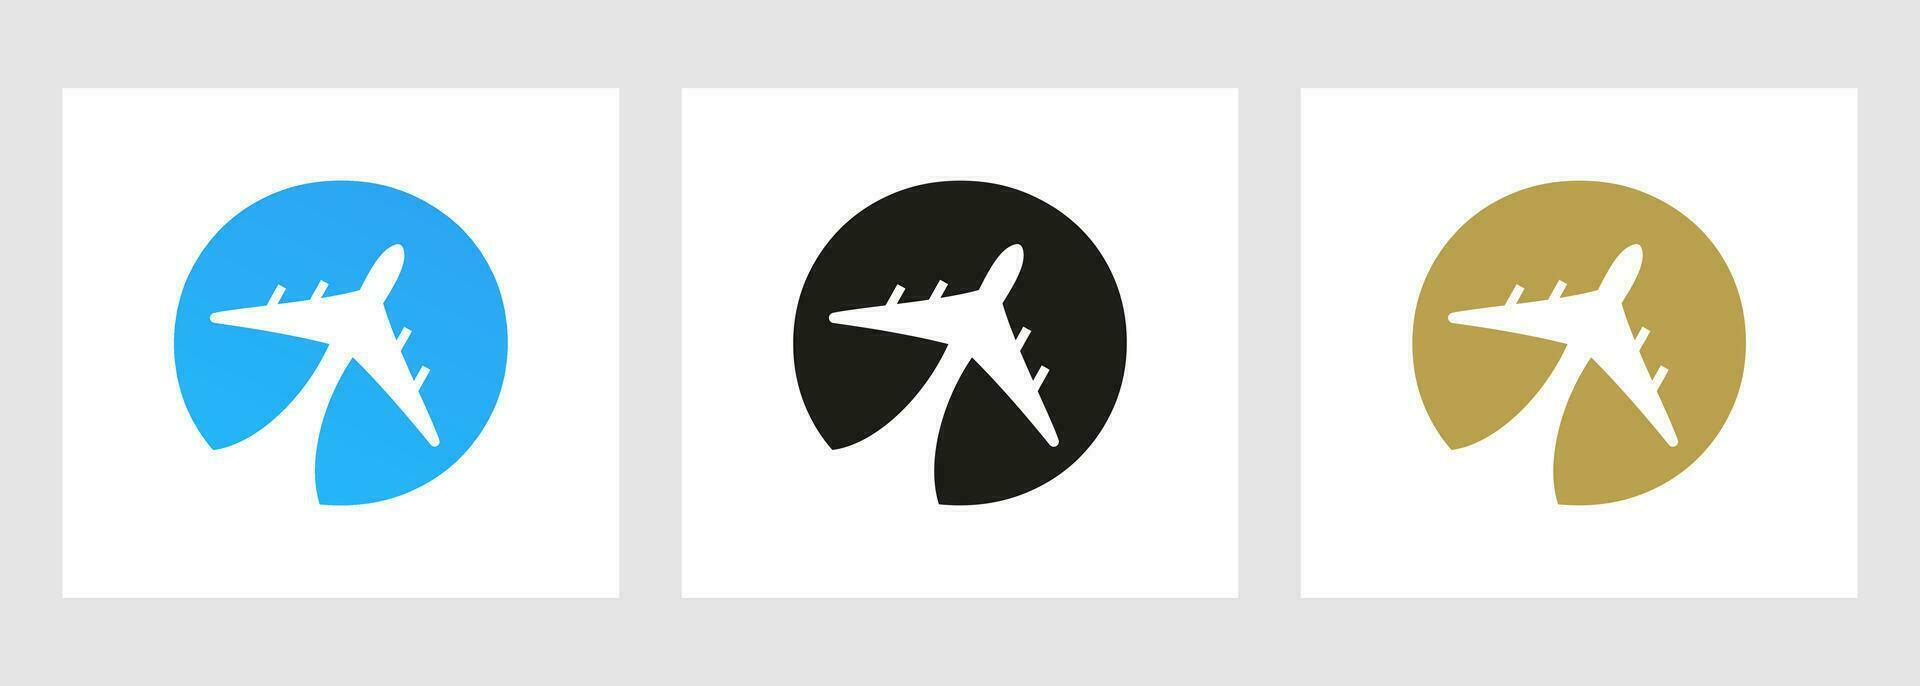 tropical viaje logo en letra o concepto. avión vuelo símbolo modelo vector